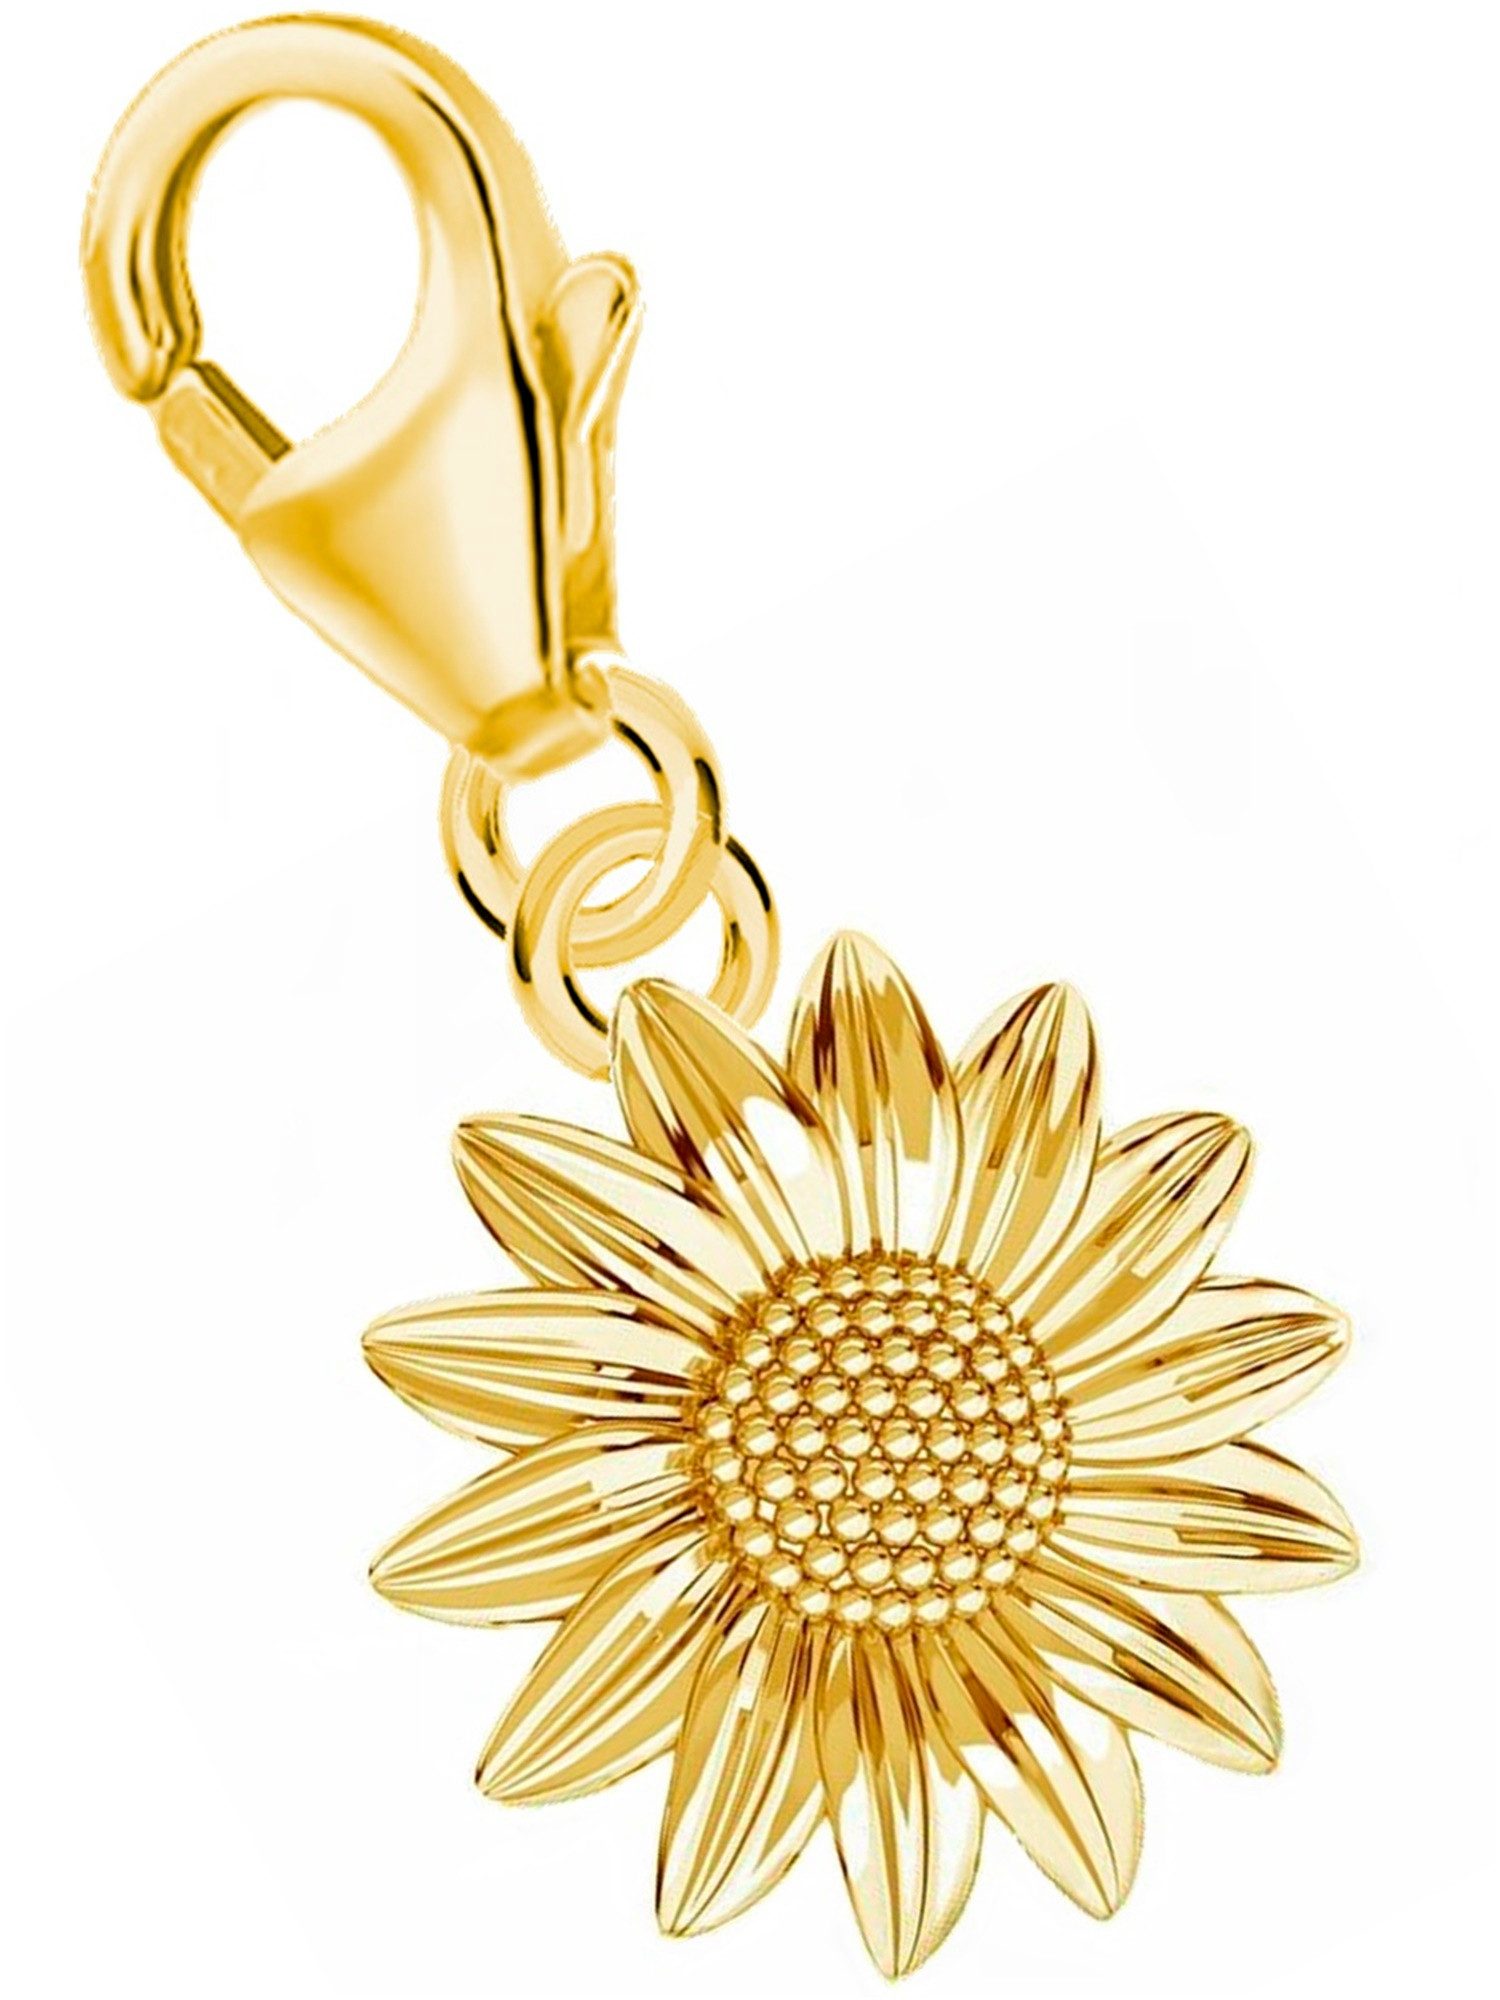 Goldene Hufeisen Charm Blume Sonnenbume Karabiner Charm 925 Sterling Silber Vergoldet